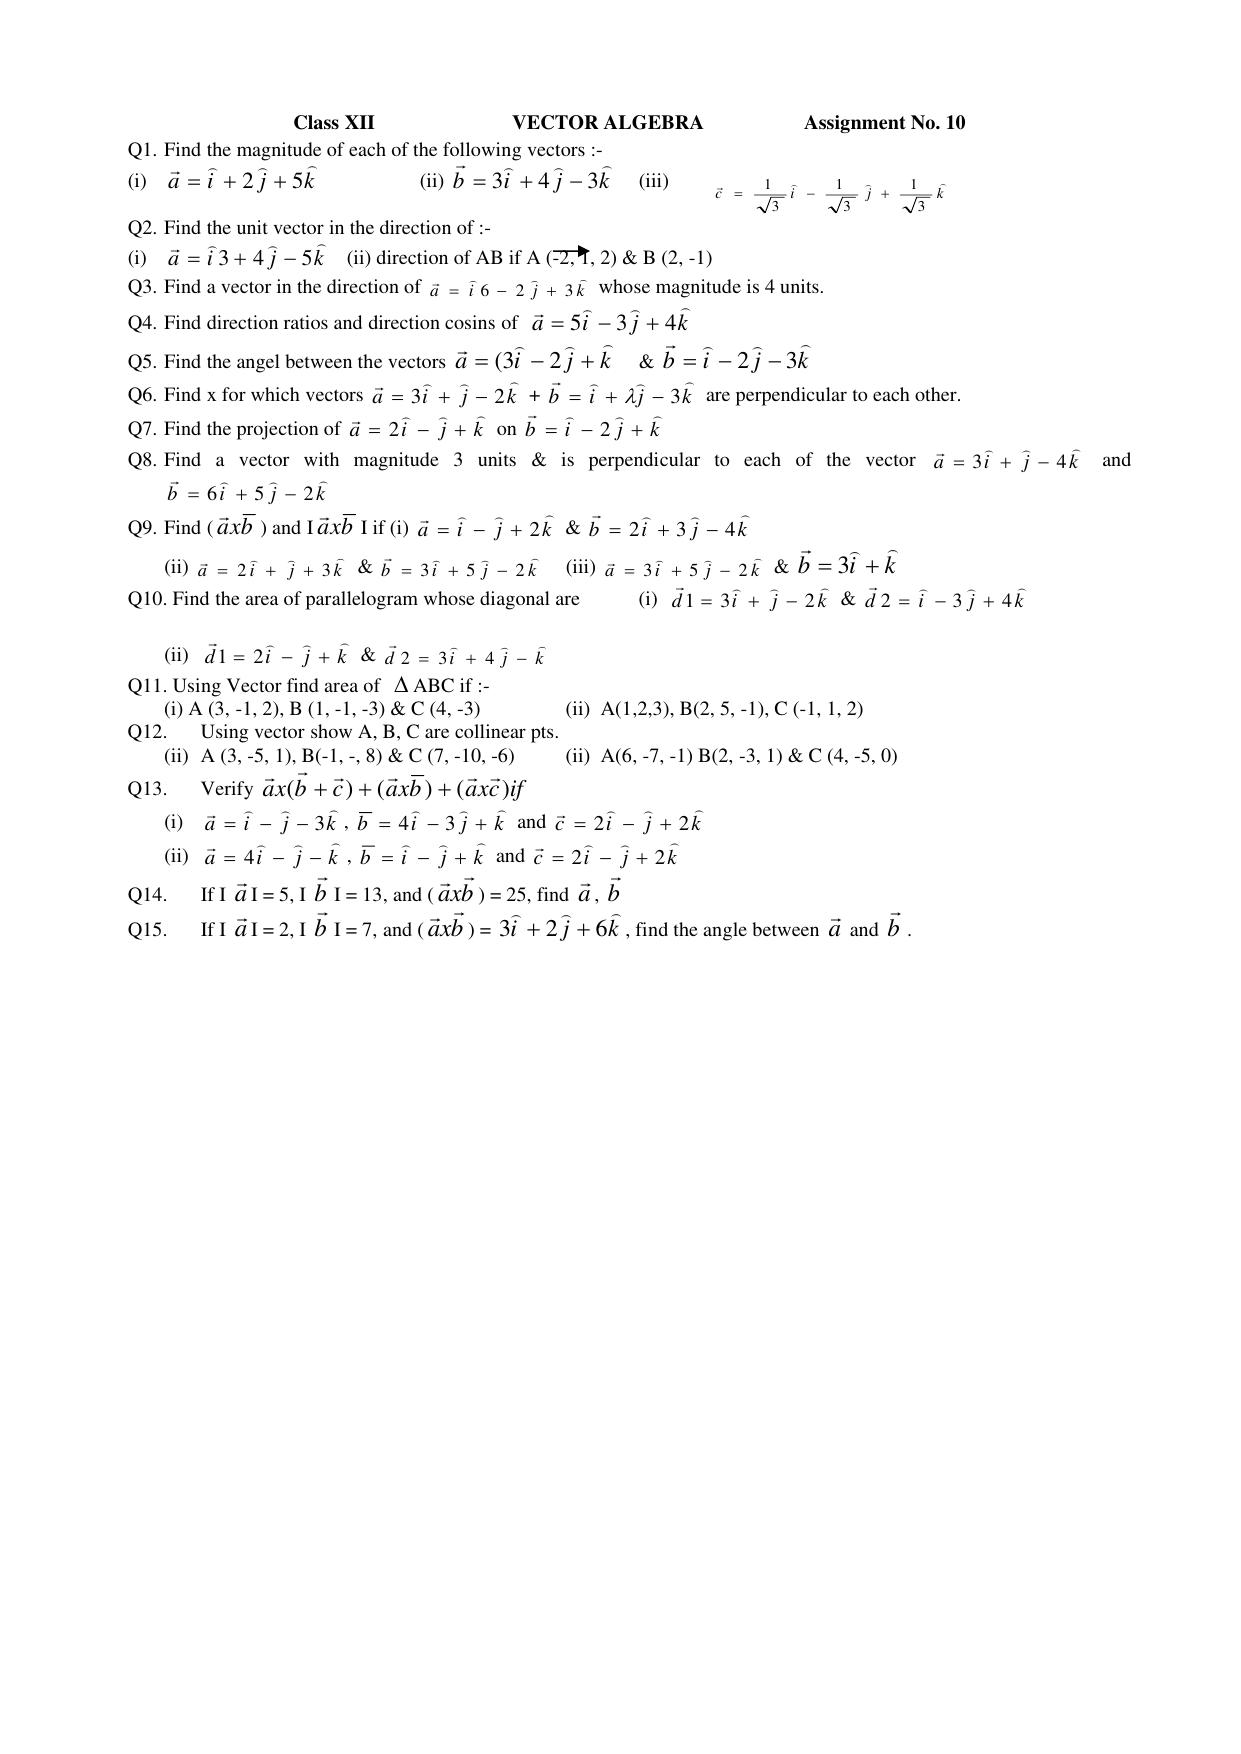 CBSE Class 12 Maths Vector Algebra Assignment - Page 1